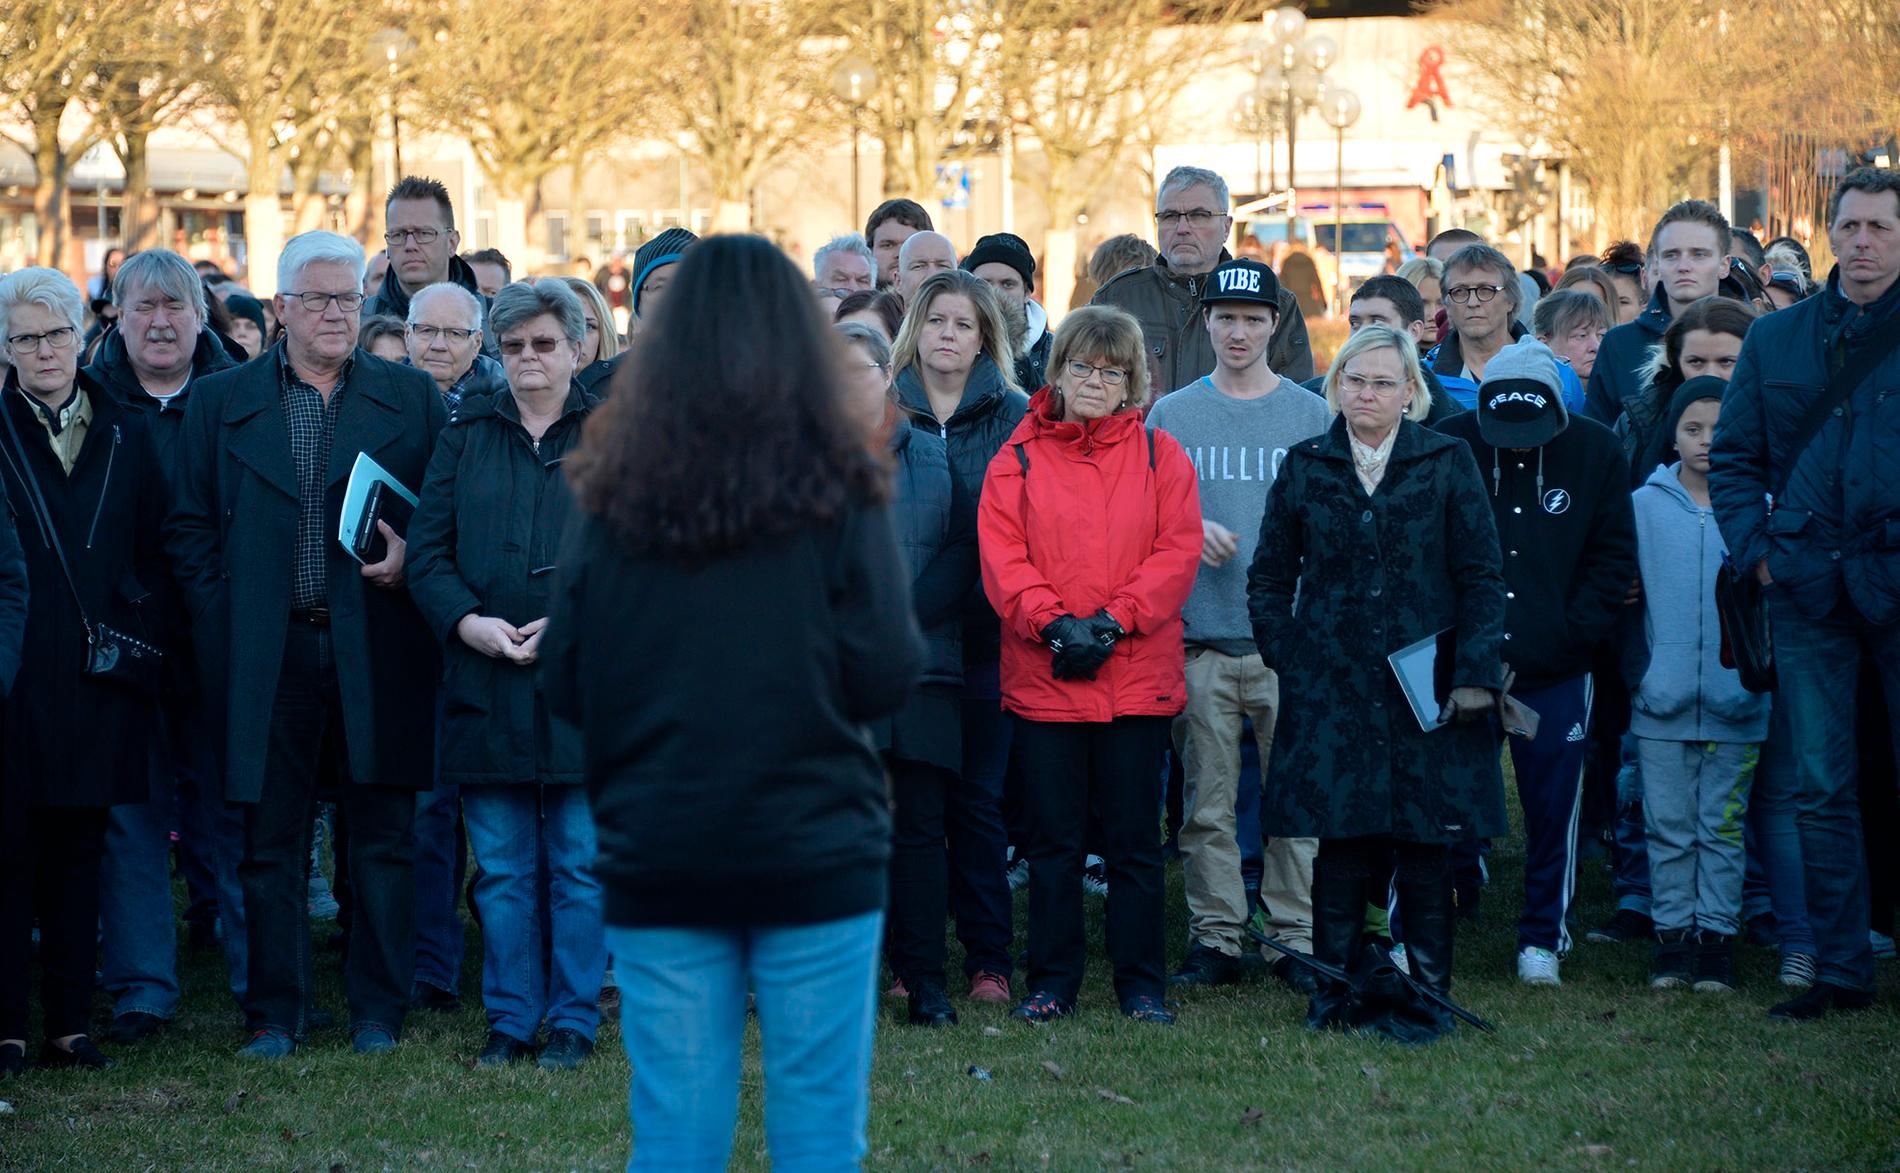 Hundratals samlades i Uddevalla för att manifestera mot våldet efter trippelmordet.